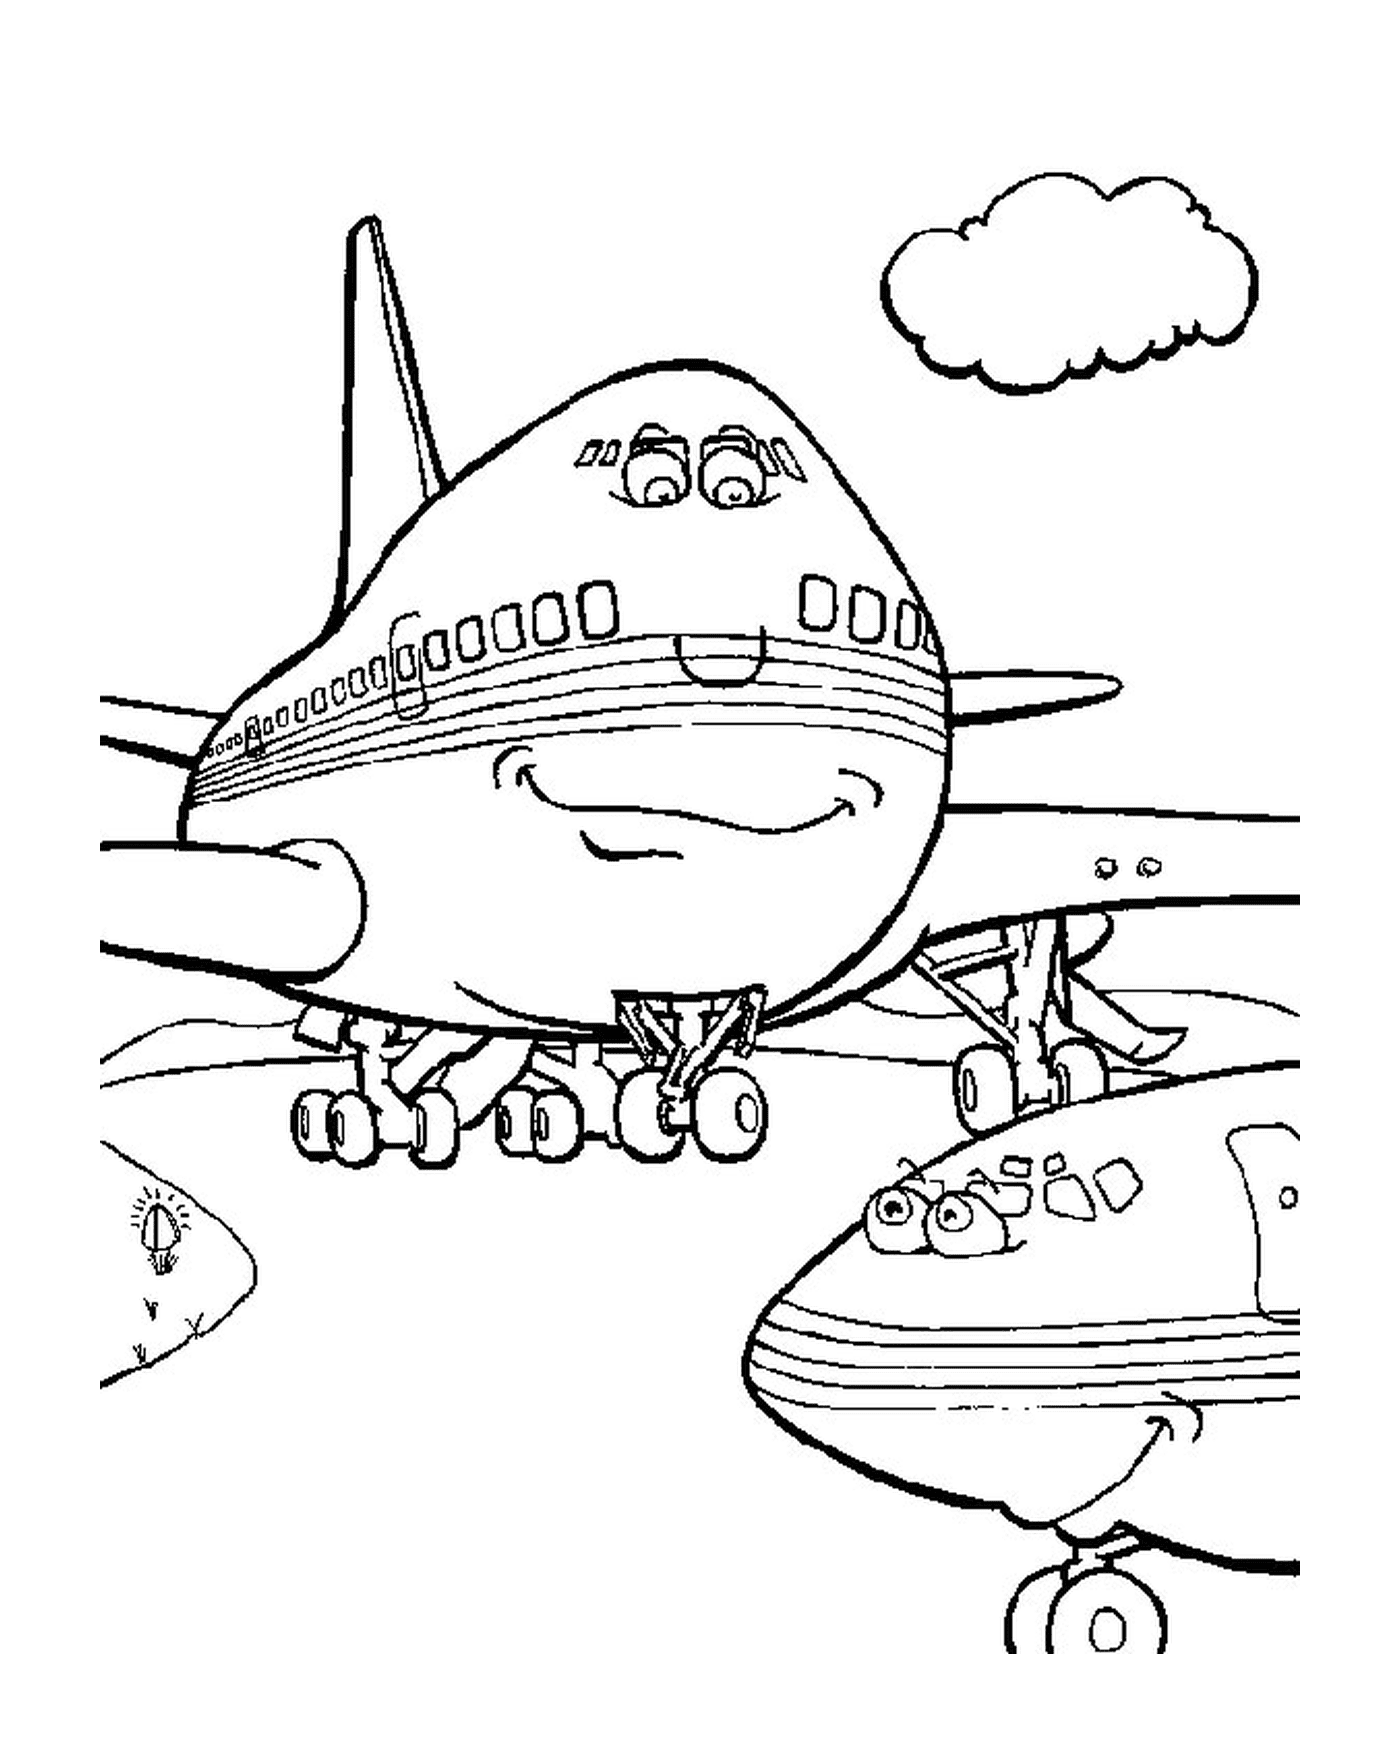  A plane 